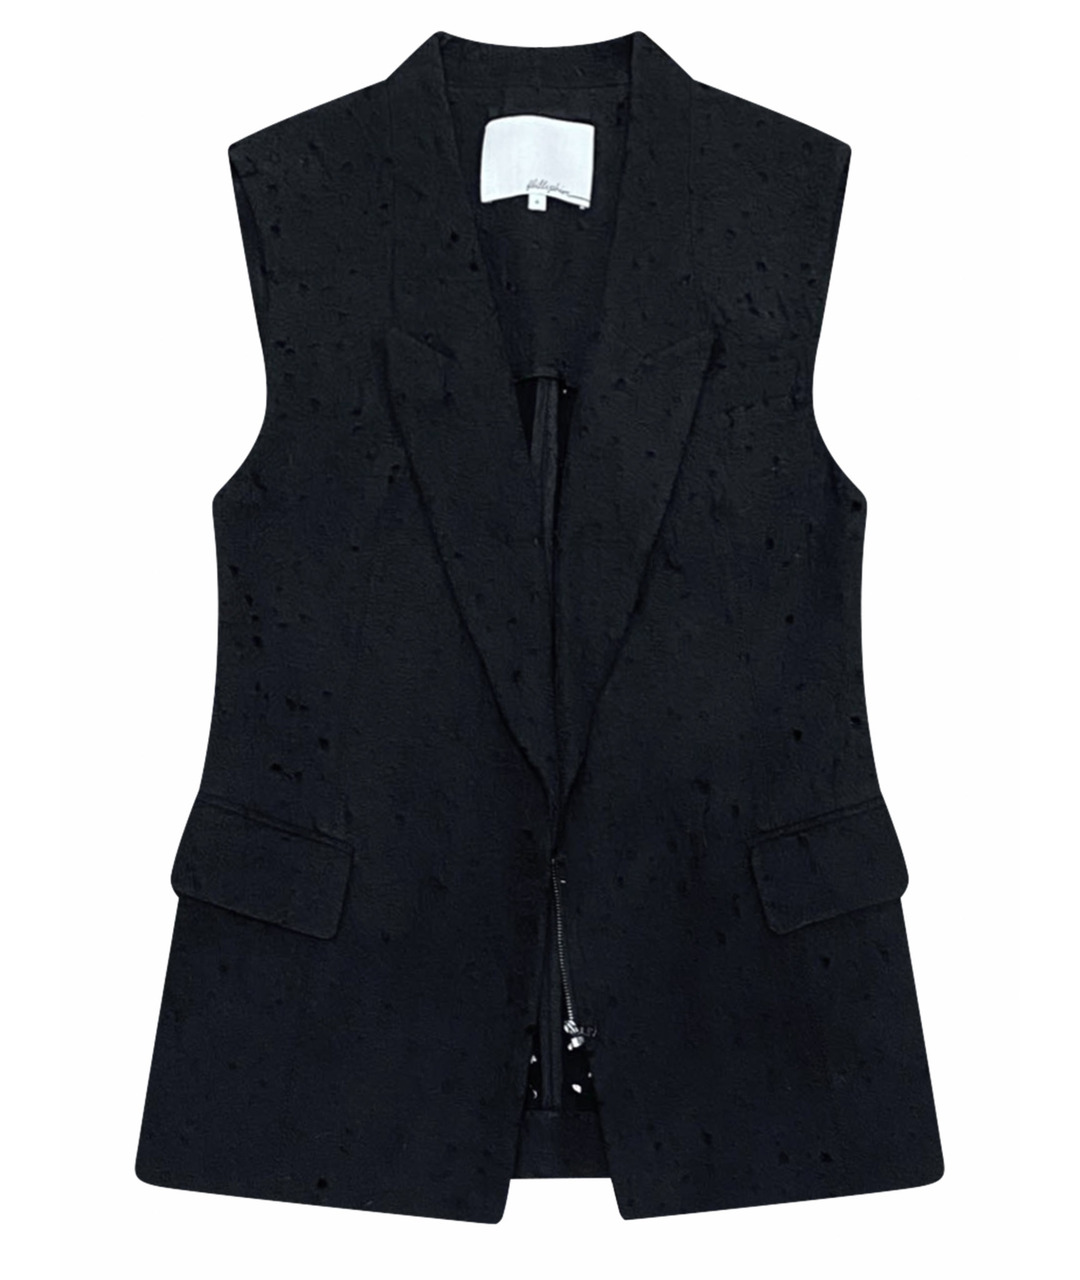 3.1 PHILLIP LIM Черный хлопковый жакет/пиджак, фото 1